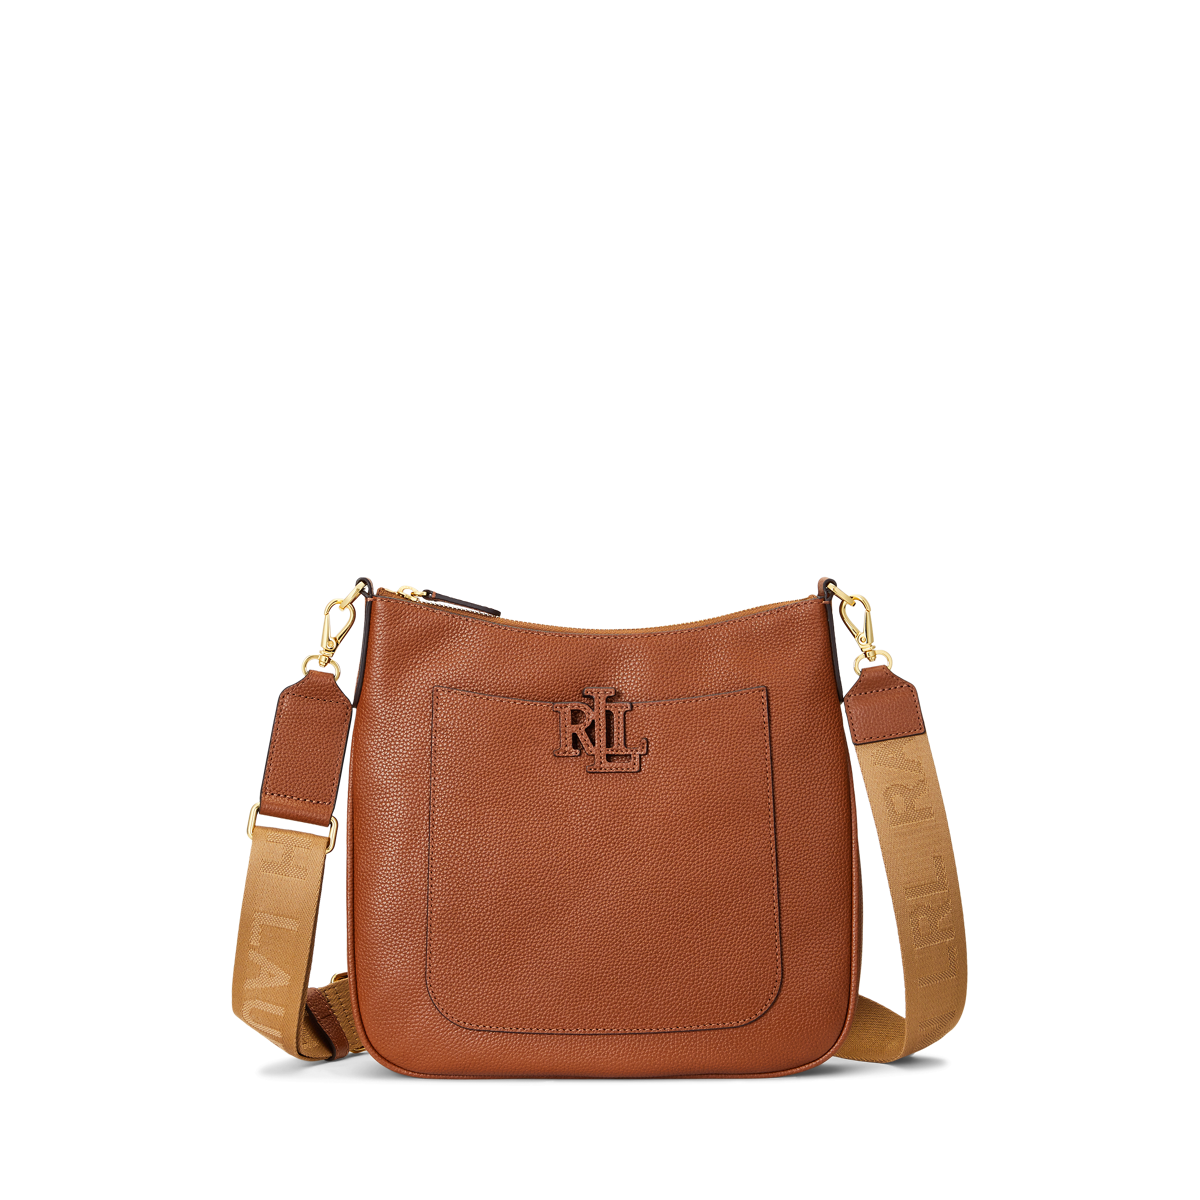 Lauren Ralph Lauren Pebbled Leather Large Cameryn Crossbody Handbags Lauren Tan : One Size